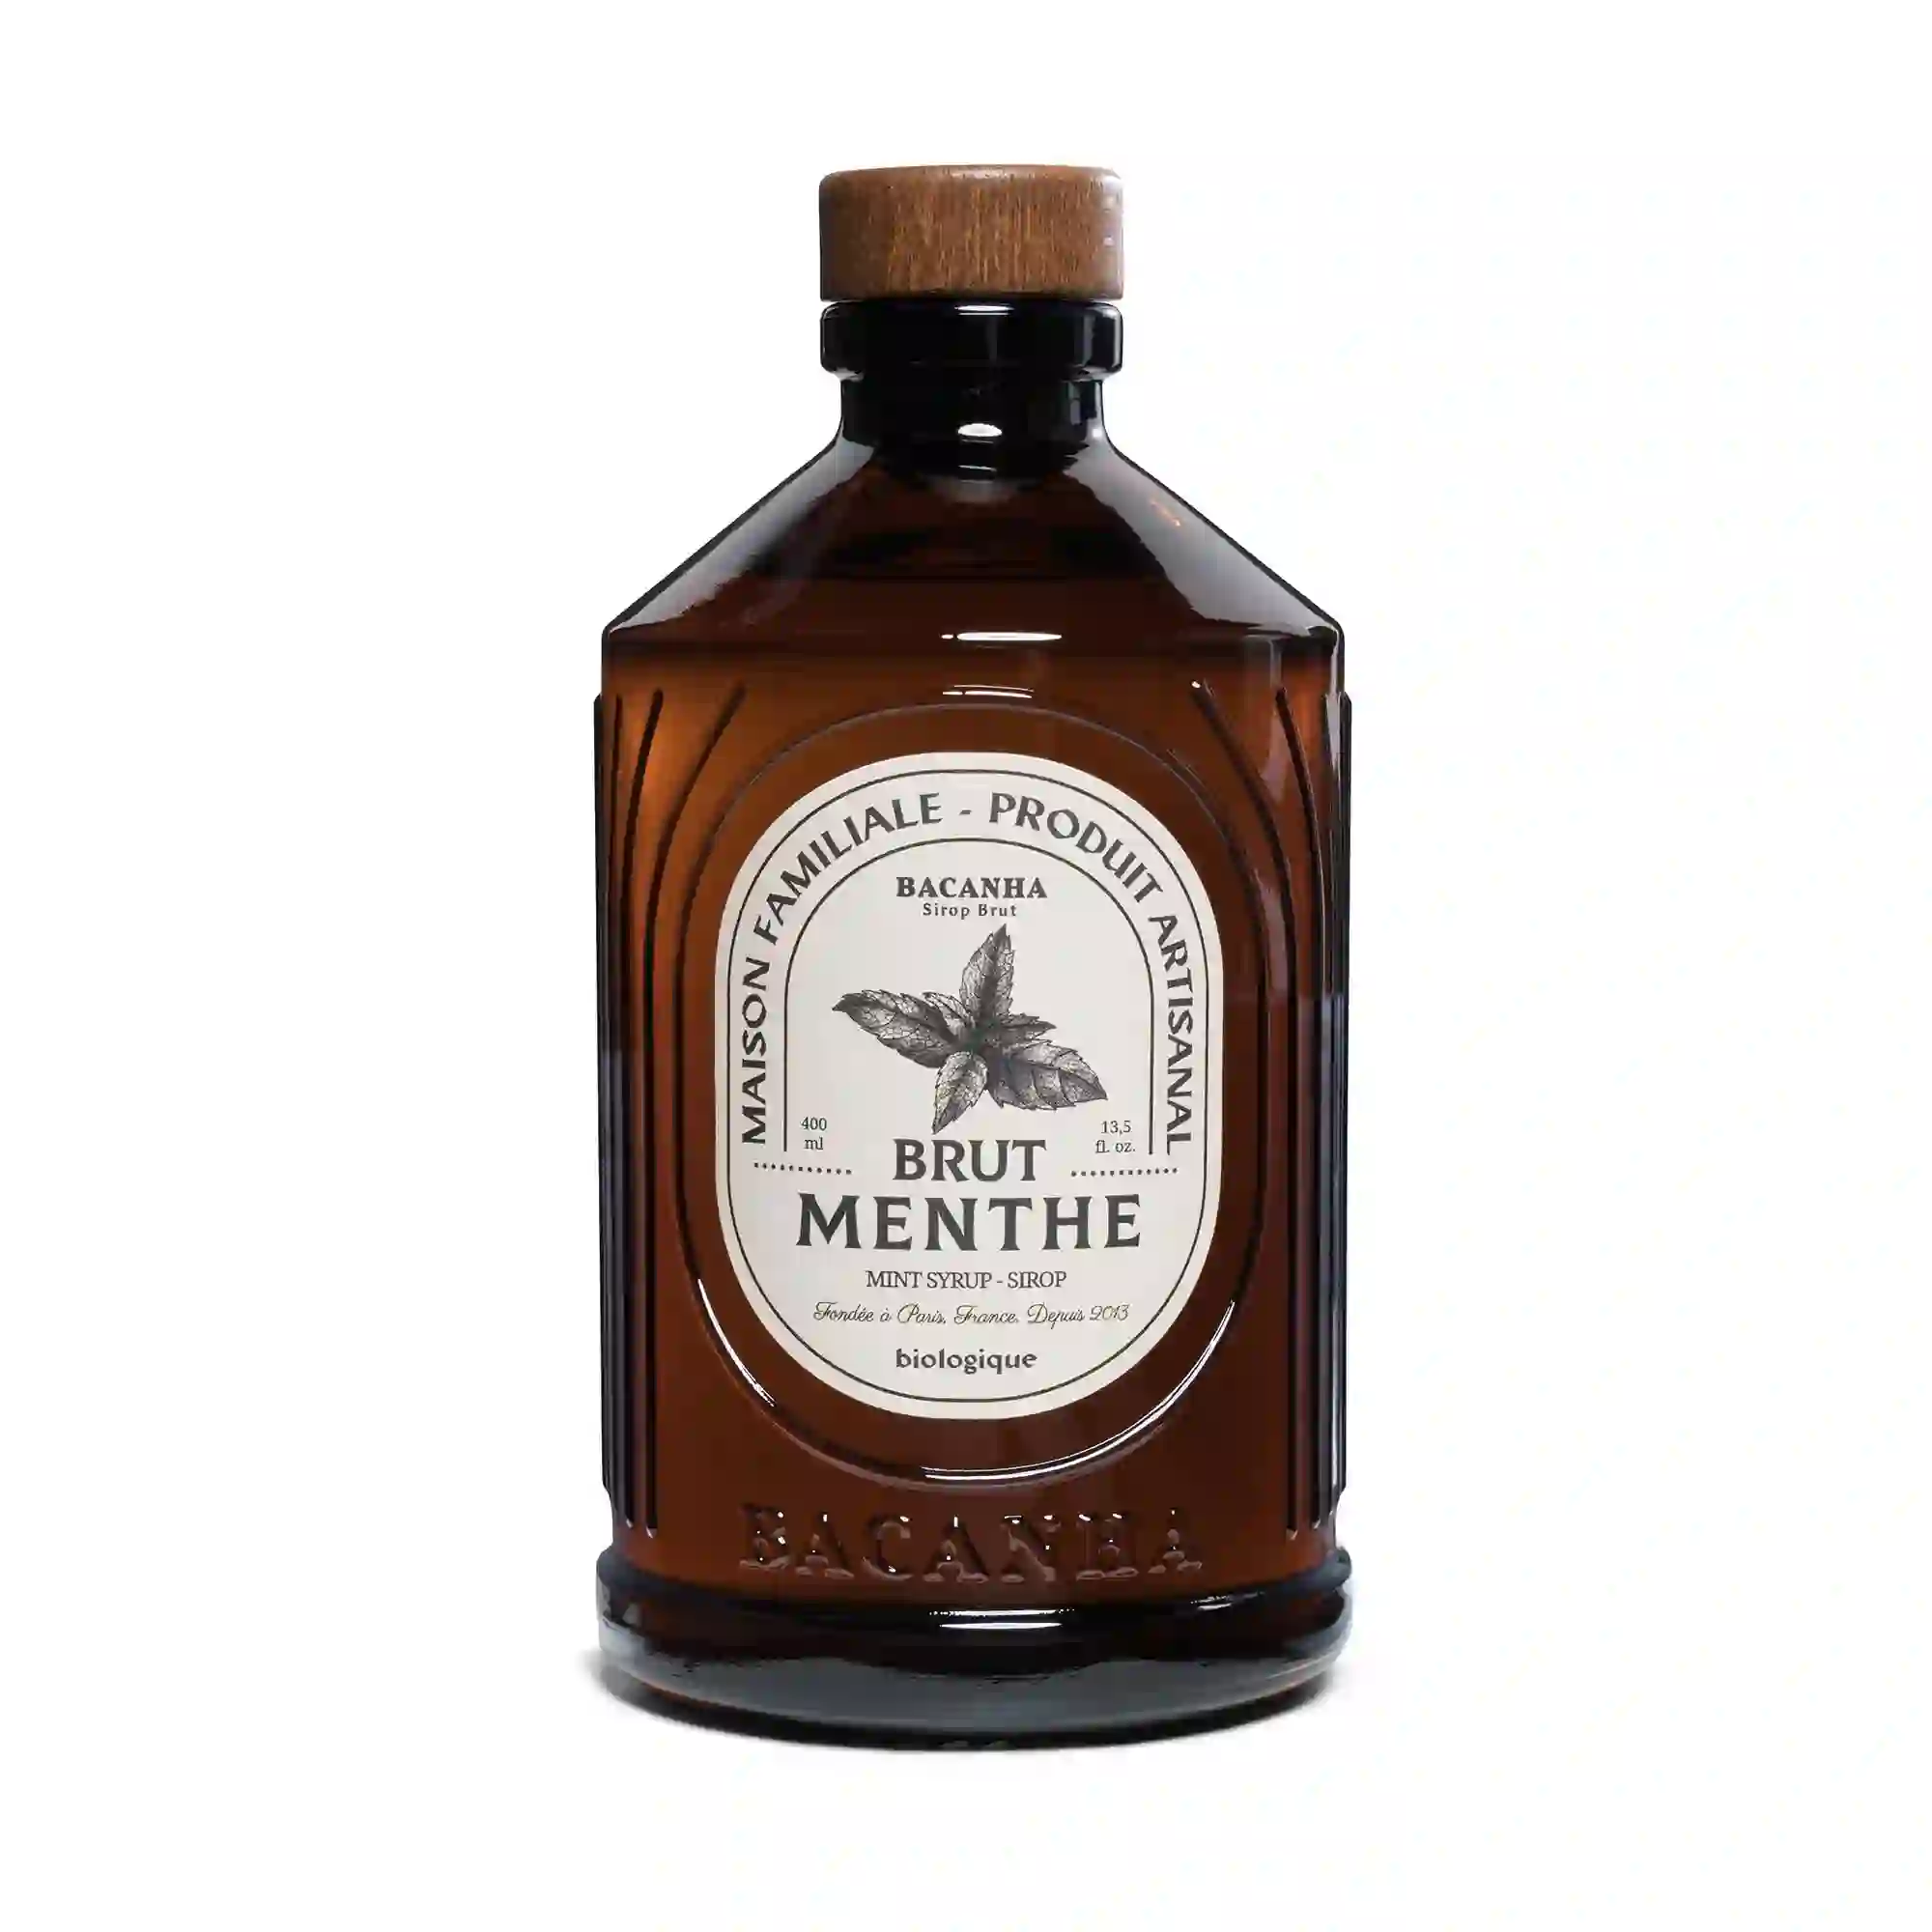 Bacanha Sirop Brut de Menthe (Mint) - 400 ml